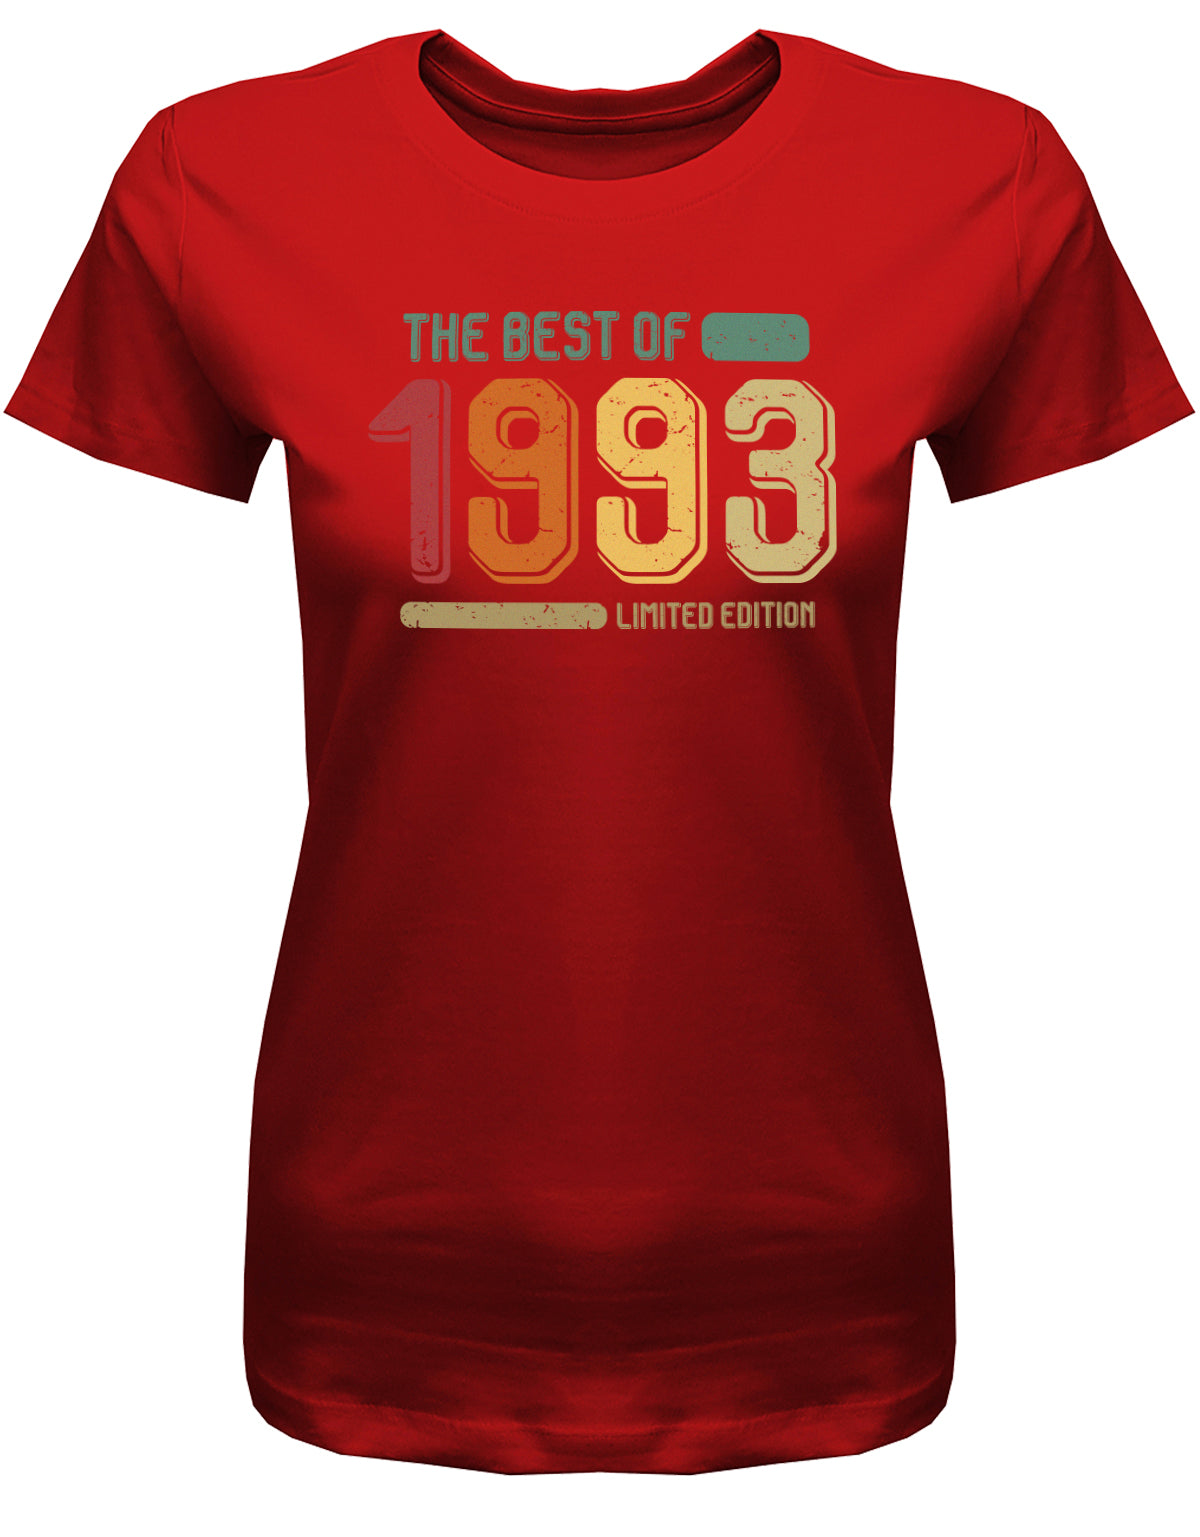 Lustiges T-Shirt zum 30. Geburtstag für die Frau Bedruckt mit: The Best of 1993 Limited Edition Retro Vintage ✓ Geschenk zum 30 geburtstag Frau ✓ 1993 geburtstag Frau ✓ 30 Geburtstag tshirt ✓ shirt geburtstag 30 Rot